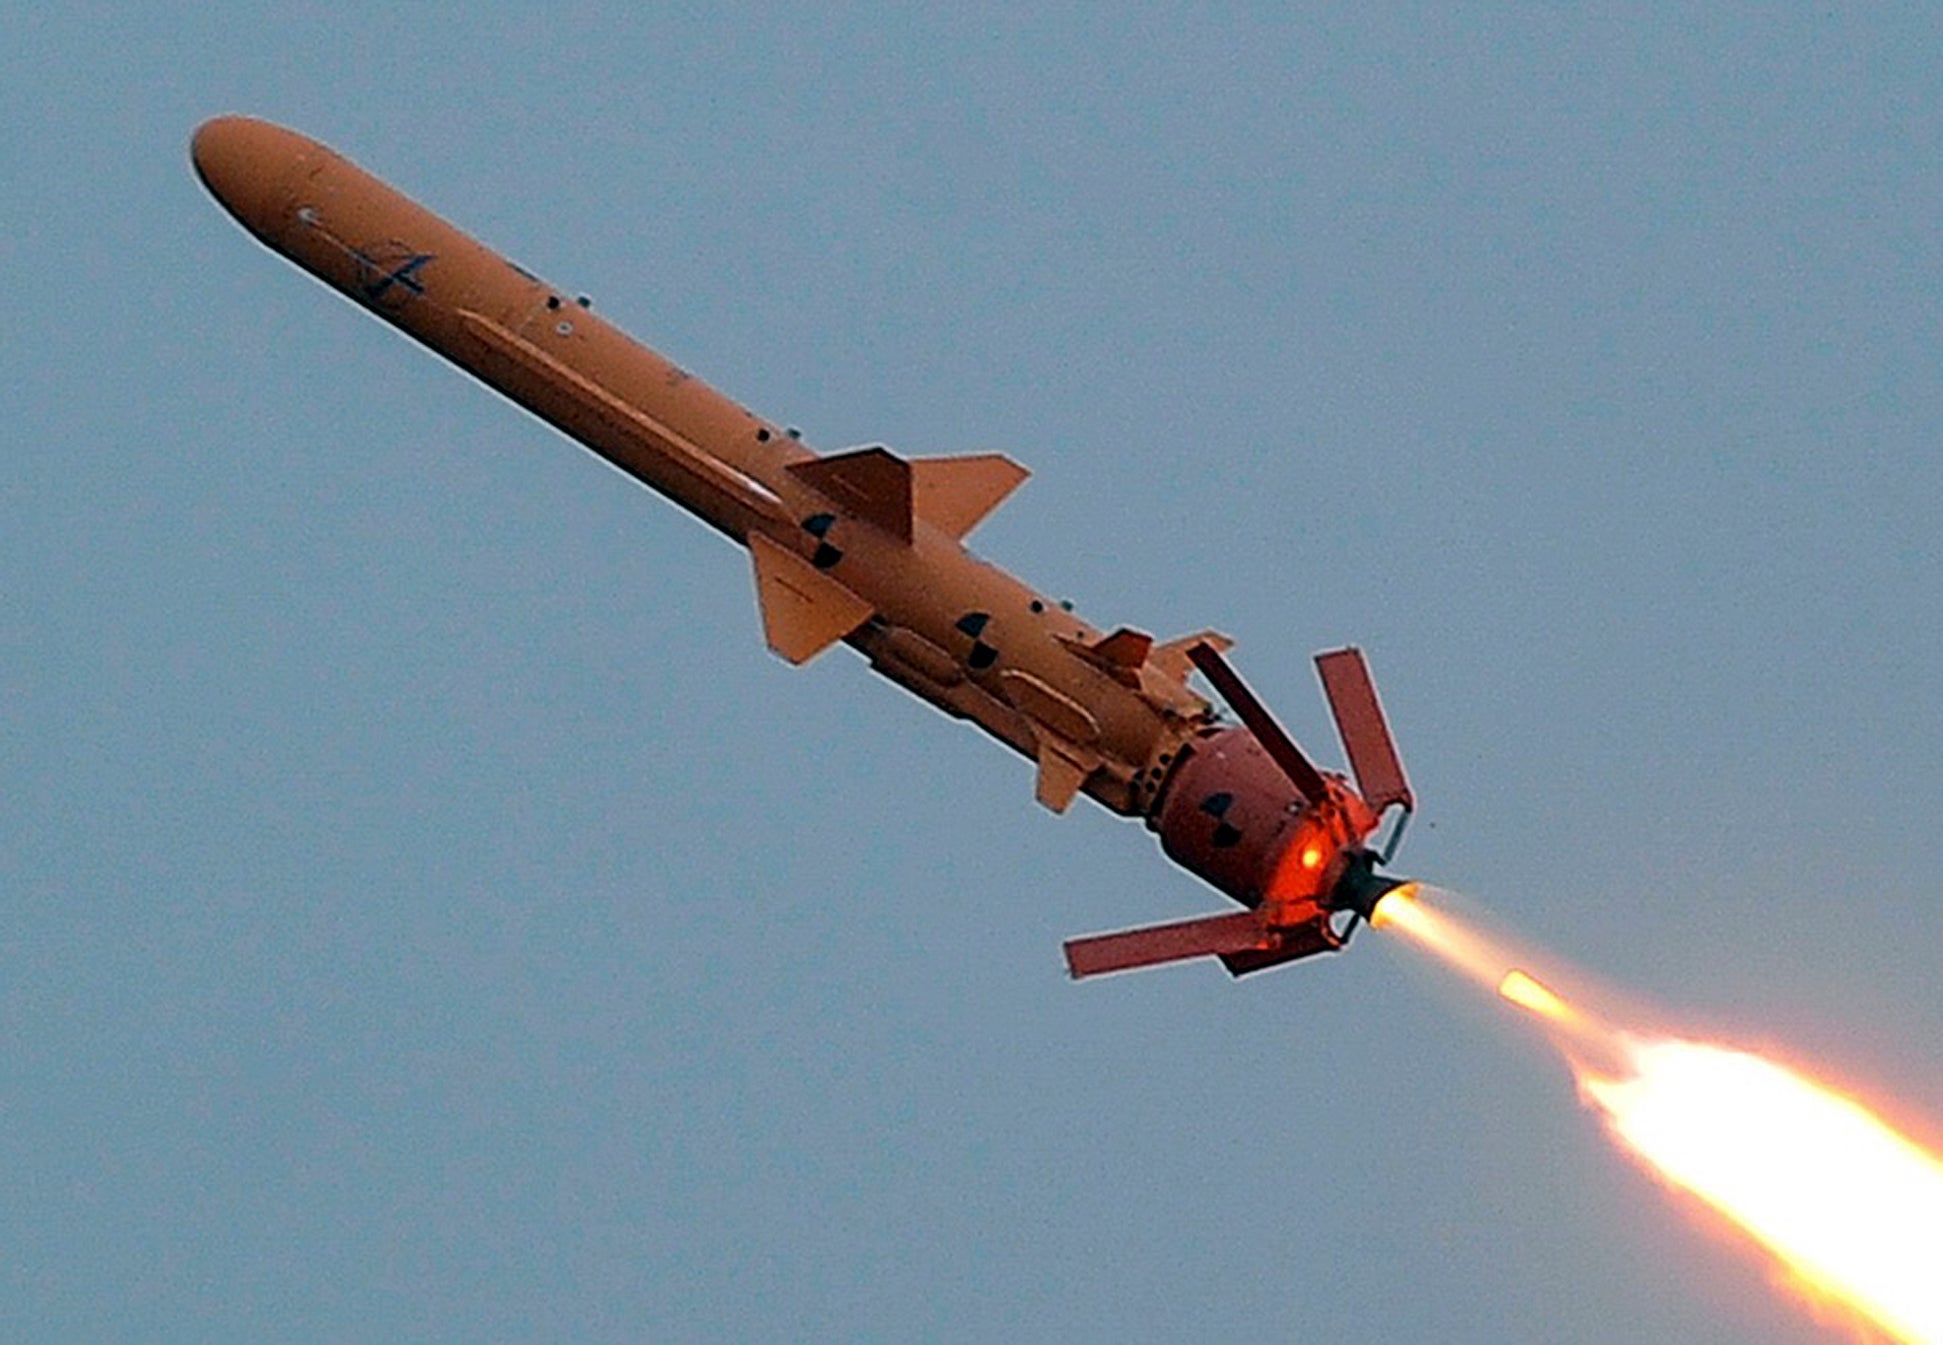 Un missile de croisière ukrainien Neptune, photographié lors d’un test militaire effectuee dans la région d'Odessa, le 5 décembre 2018. Il s'agit d'une arme ukrainienne moderne.